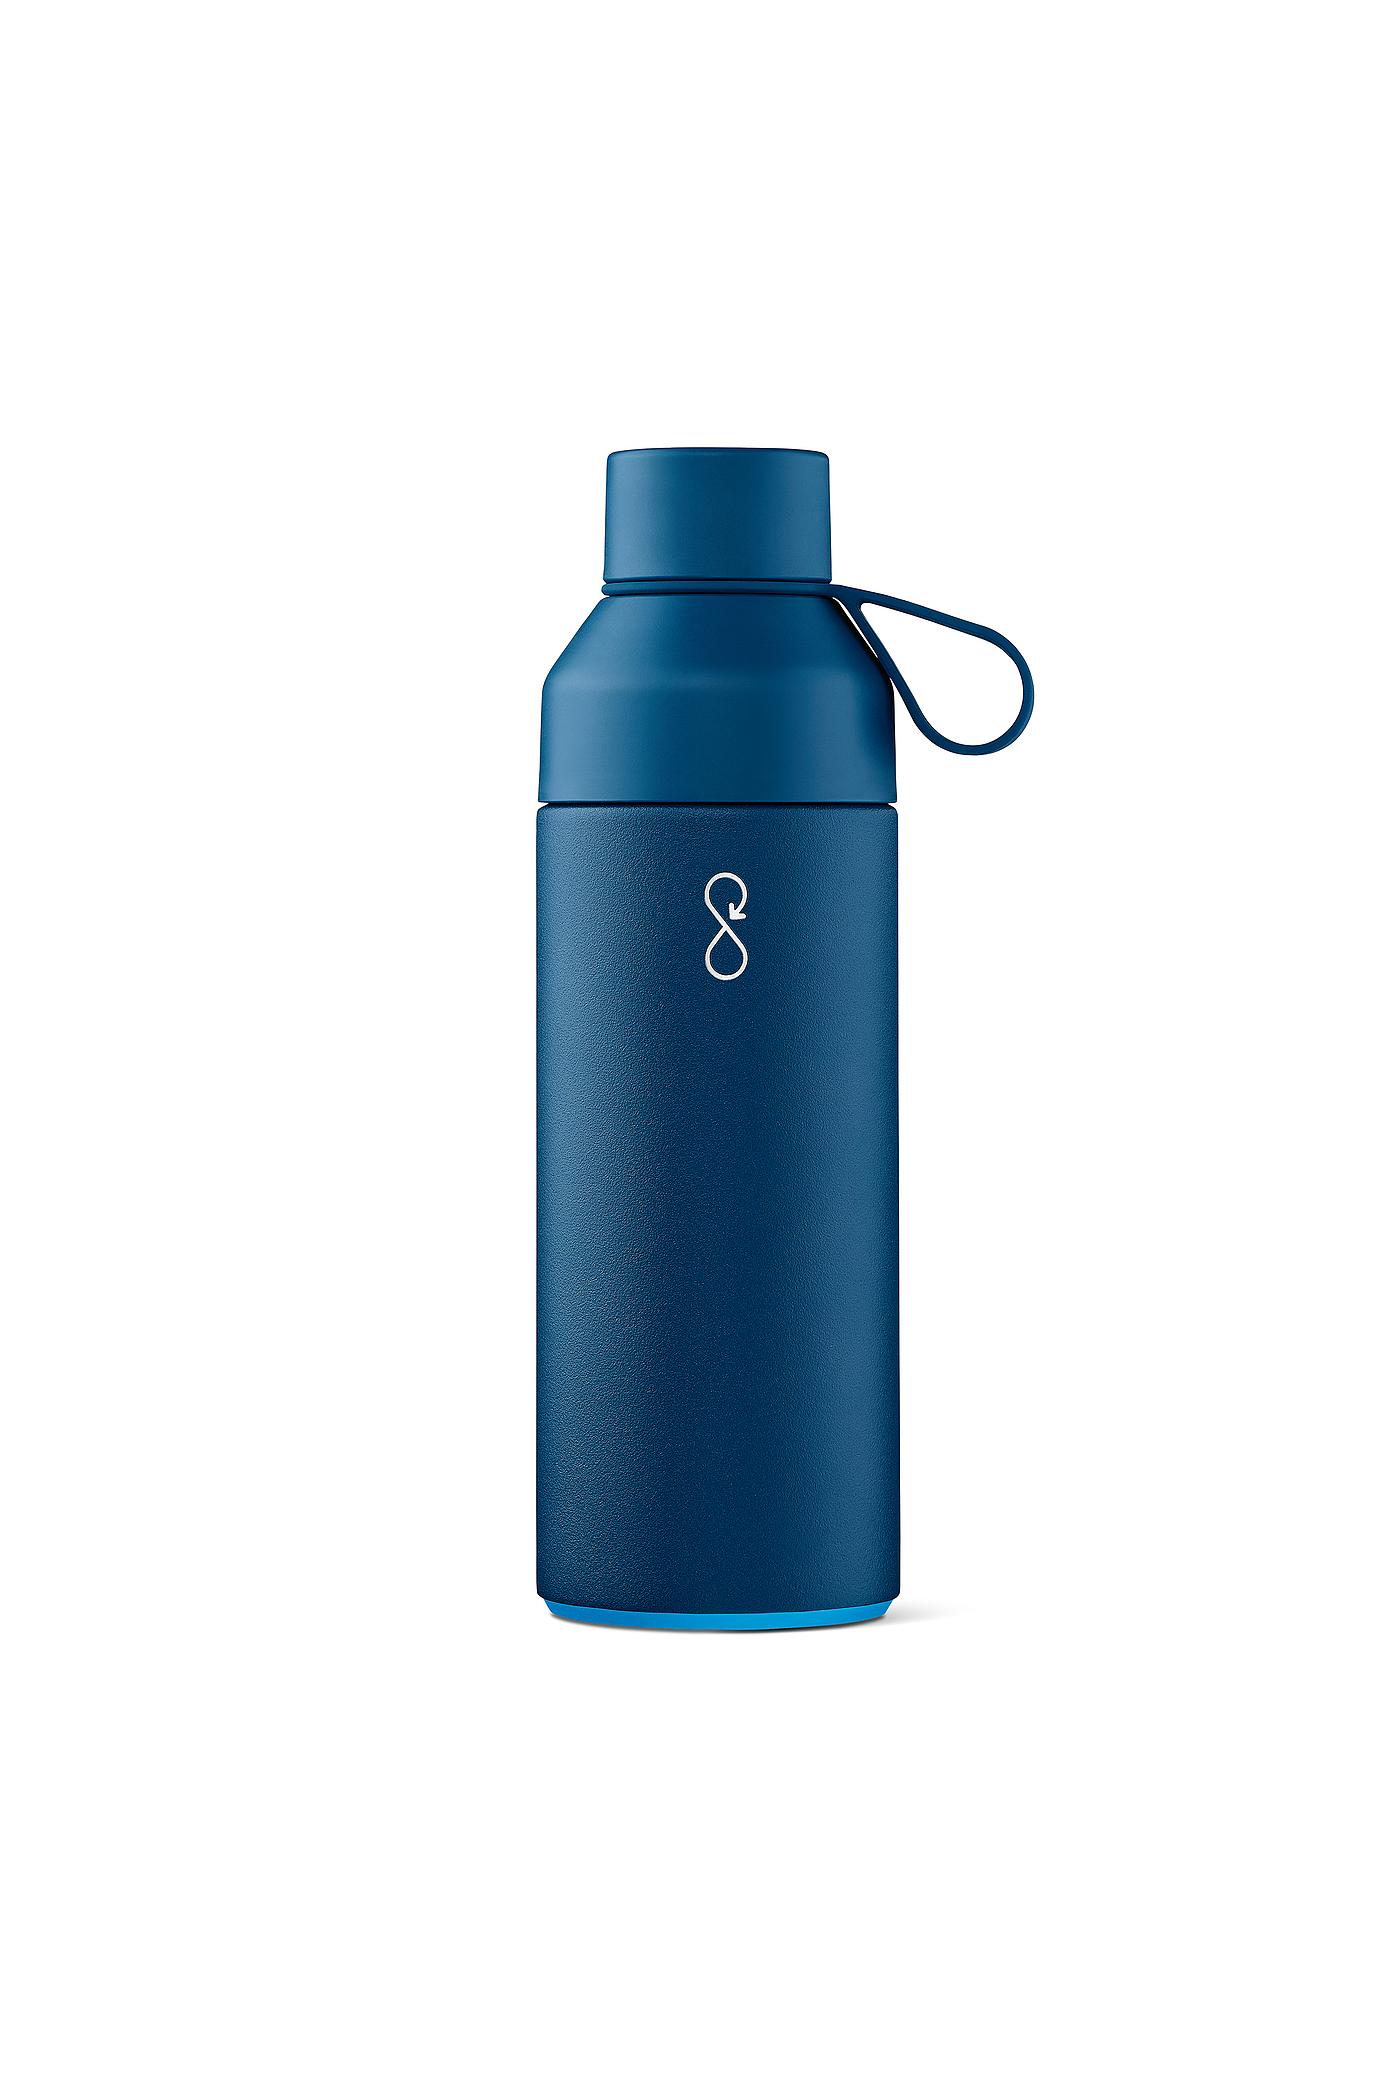 饮水瓶，水瓶，Ocean Bottle，2020红点产品设计大奖，